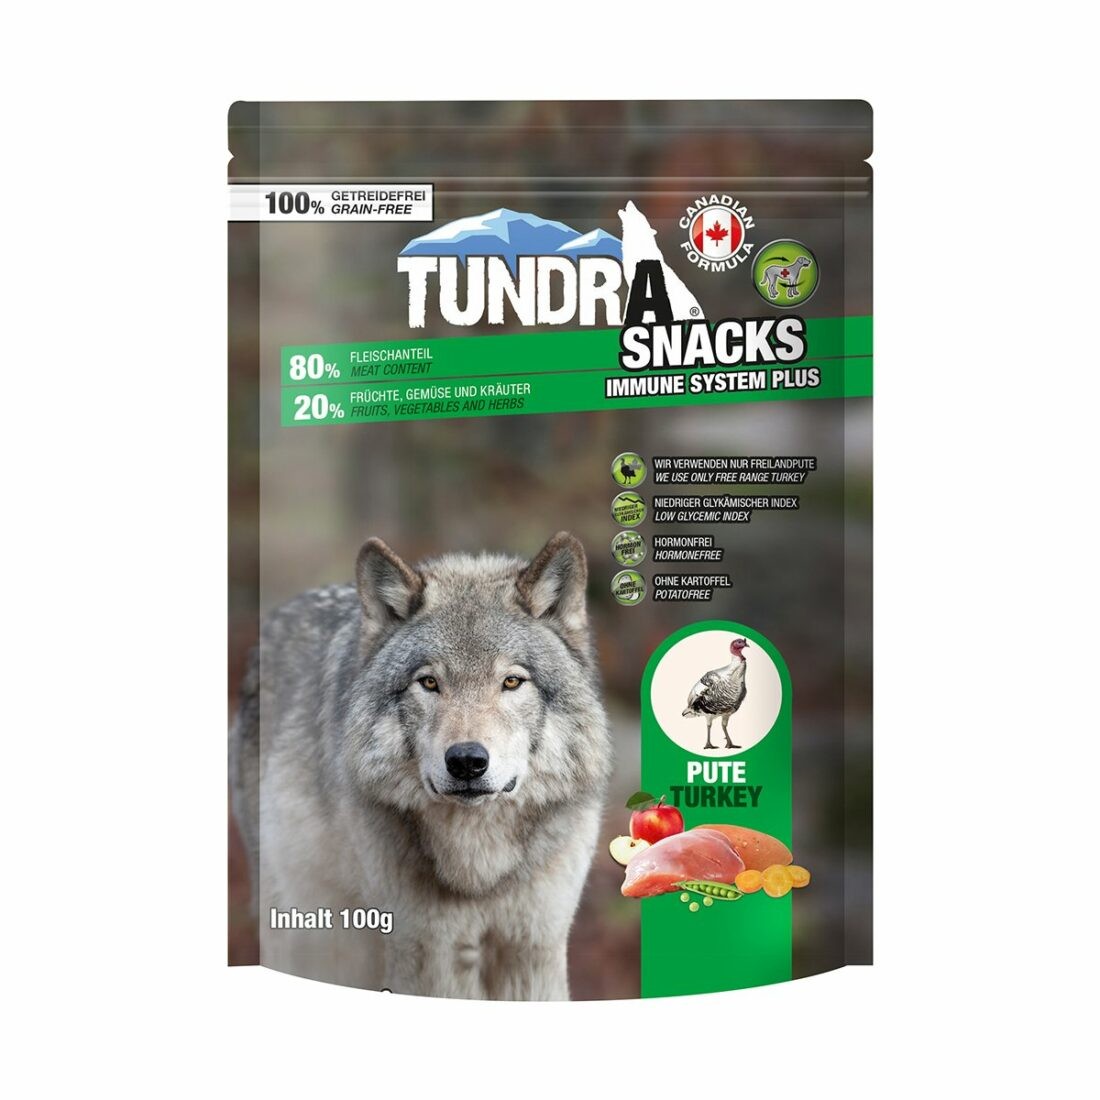 Tundra Snack Immune System